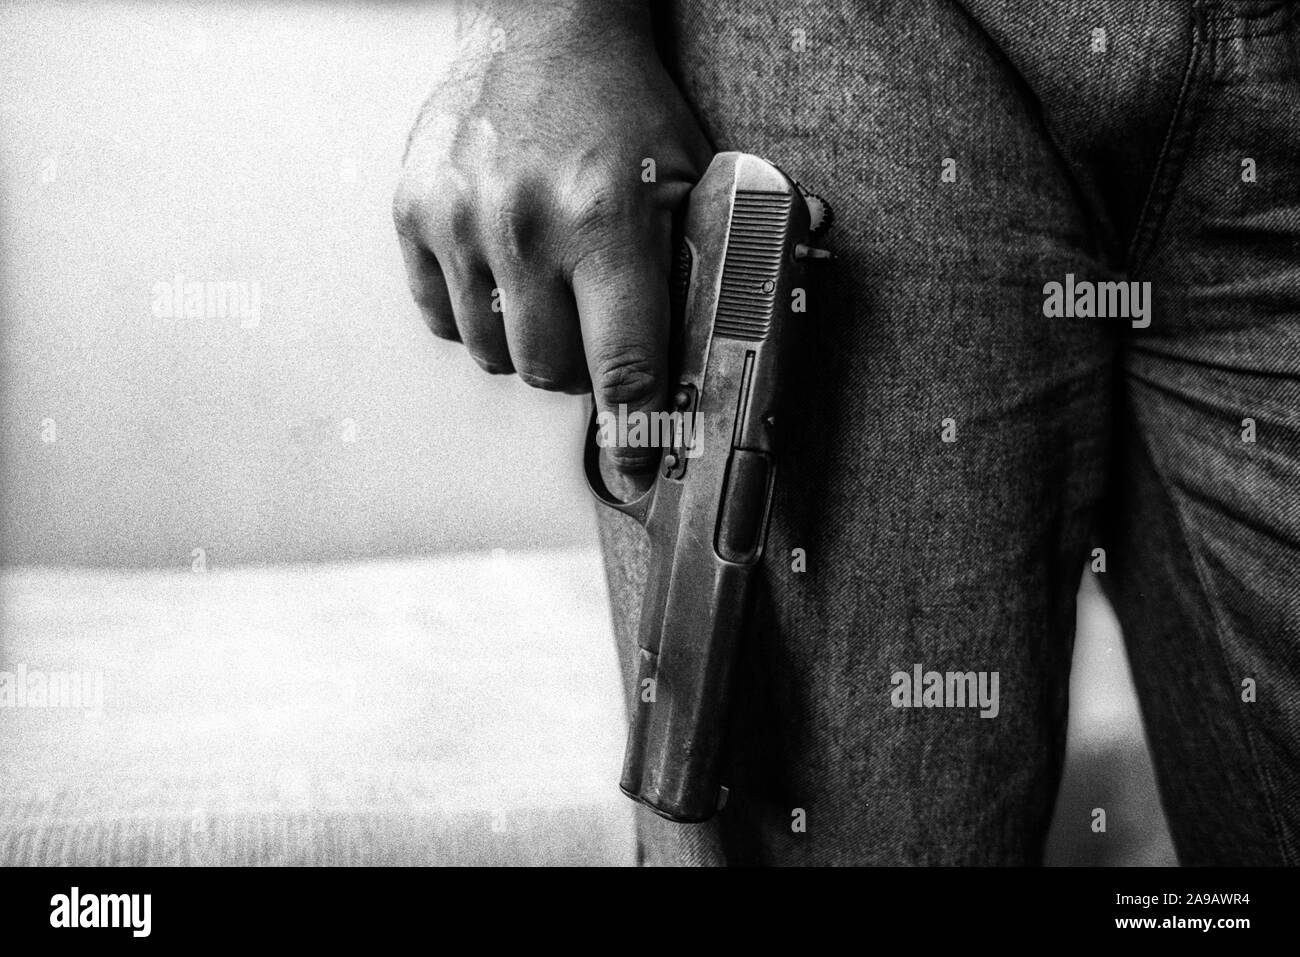 Automatic handgun, Shkodra, Albania. Stock Photo